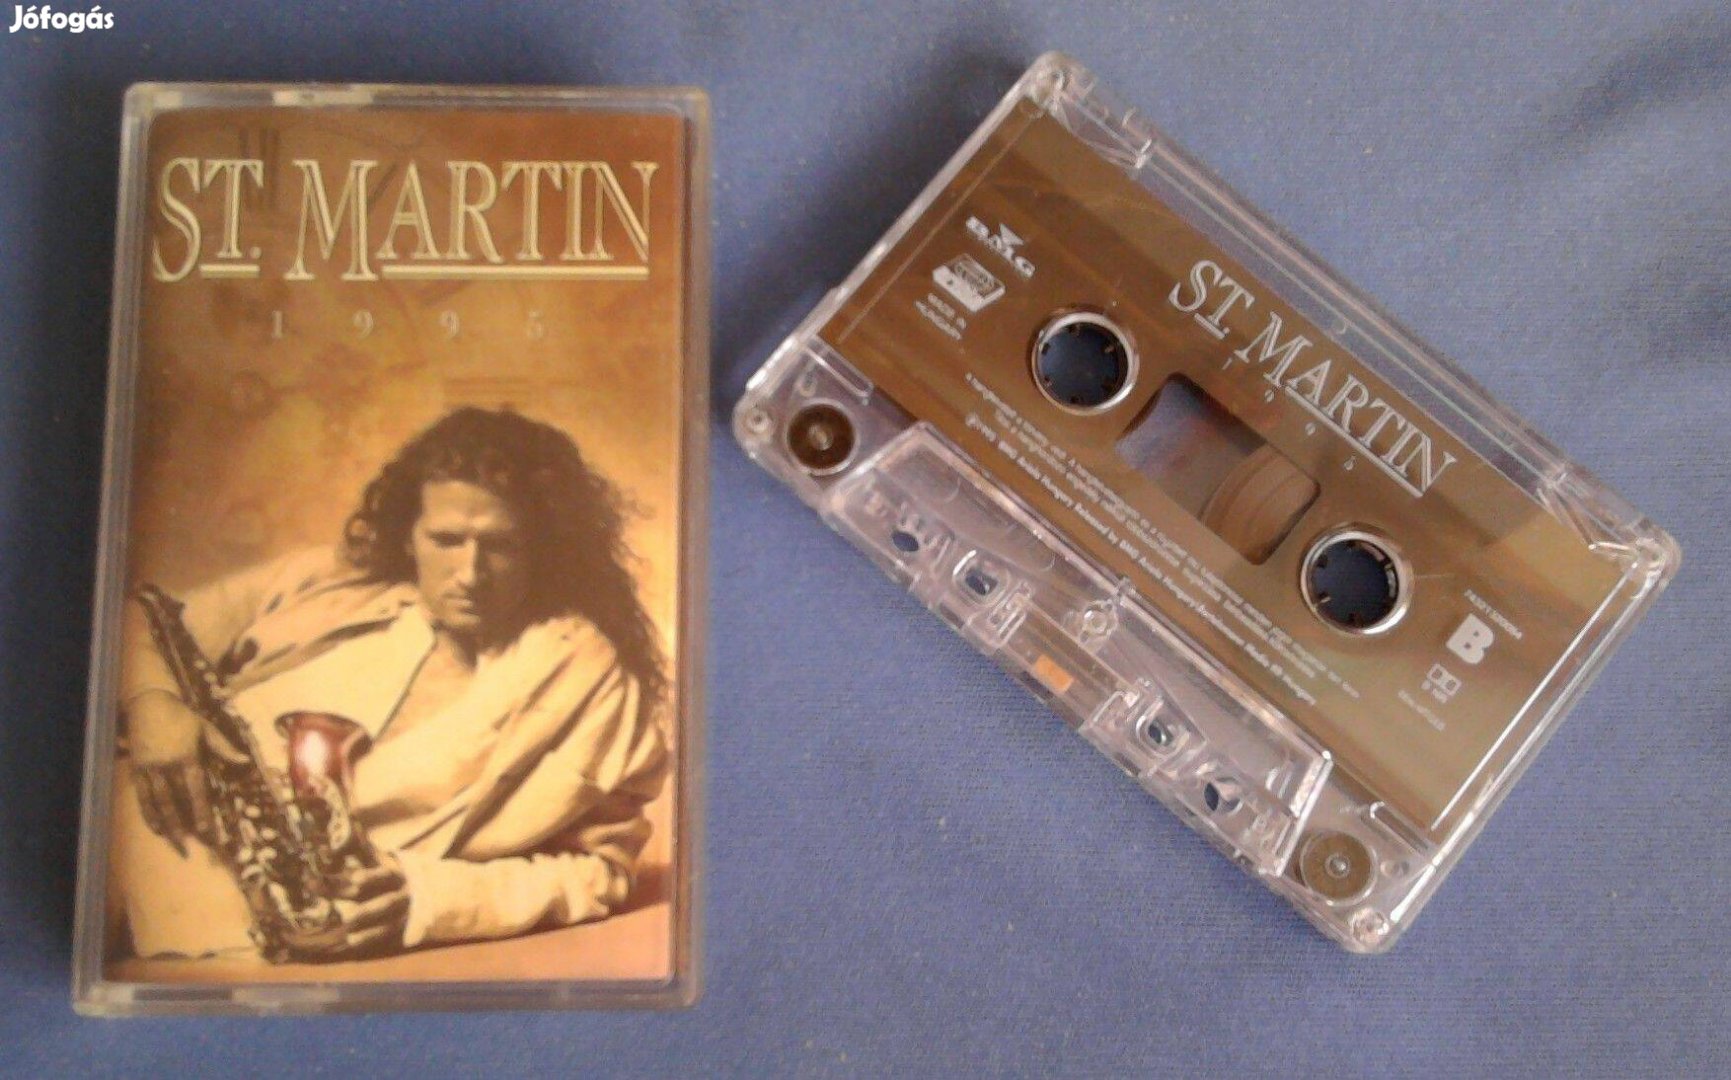 St. Martin - 1995 MC magnókazetta